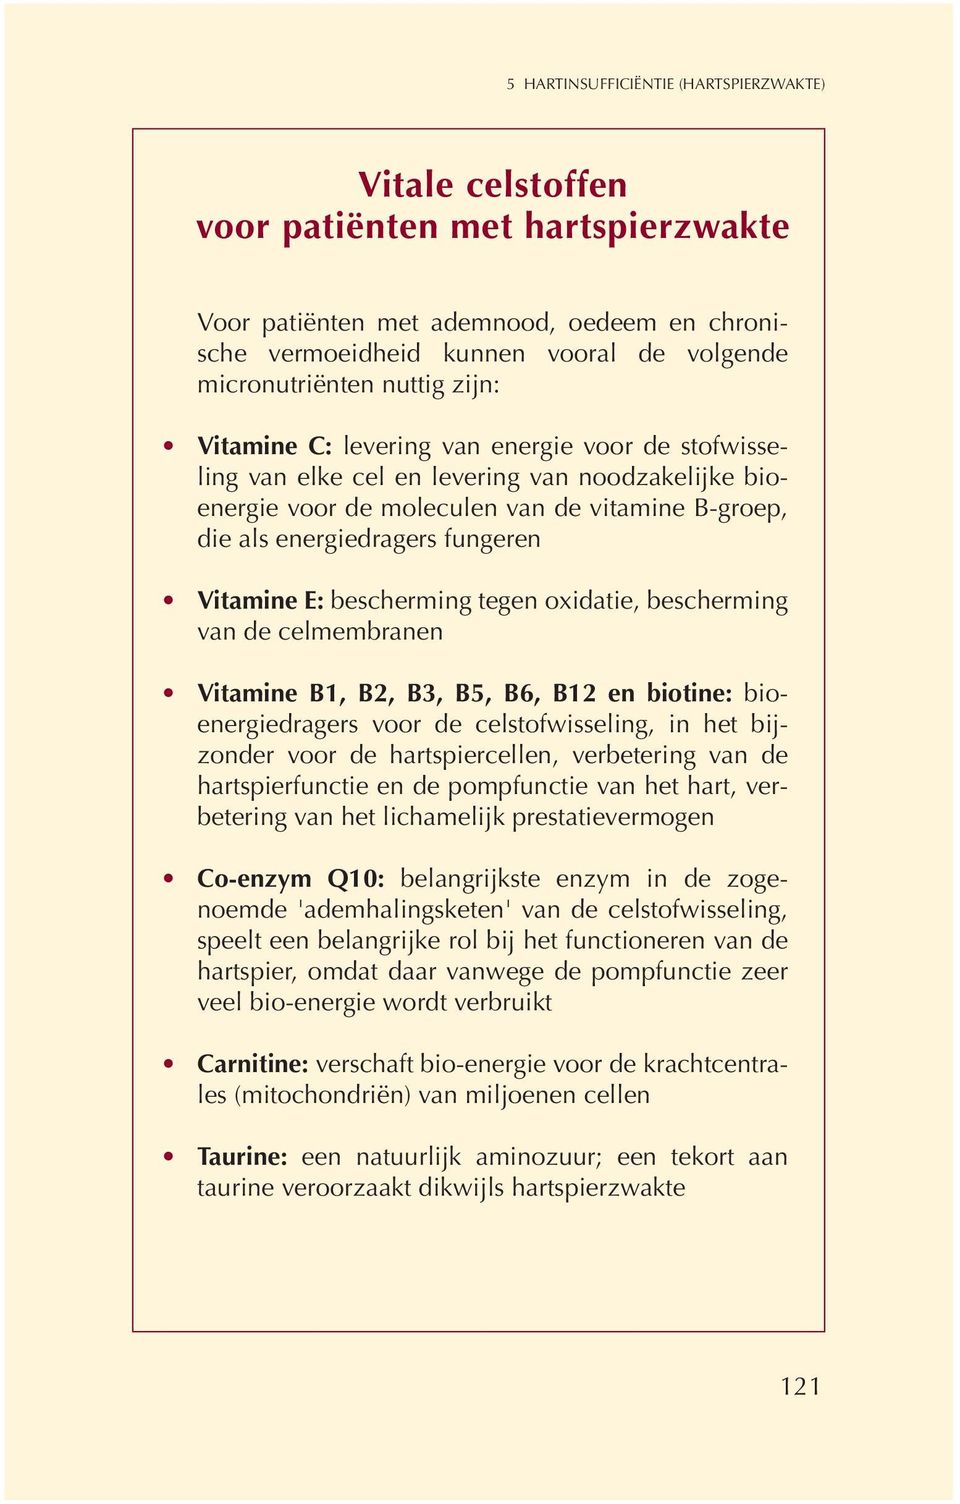 Vitamine E: bescherming tegen oxidatie, bescherming van de celmembranen Vitamine B1, B2, B3, B5, B6, B12 en biotine: bioenergiedragers voor de celstofwisseling, in het bijzonder voor de